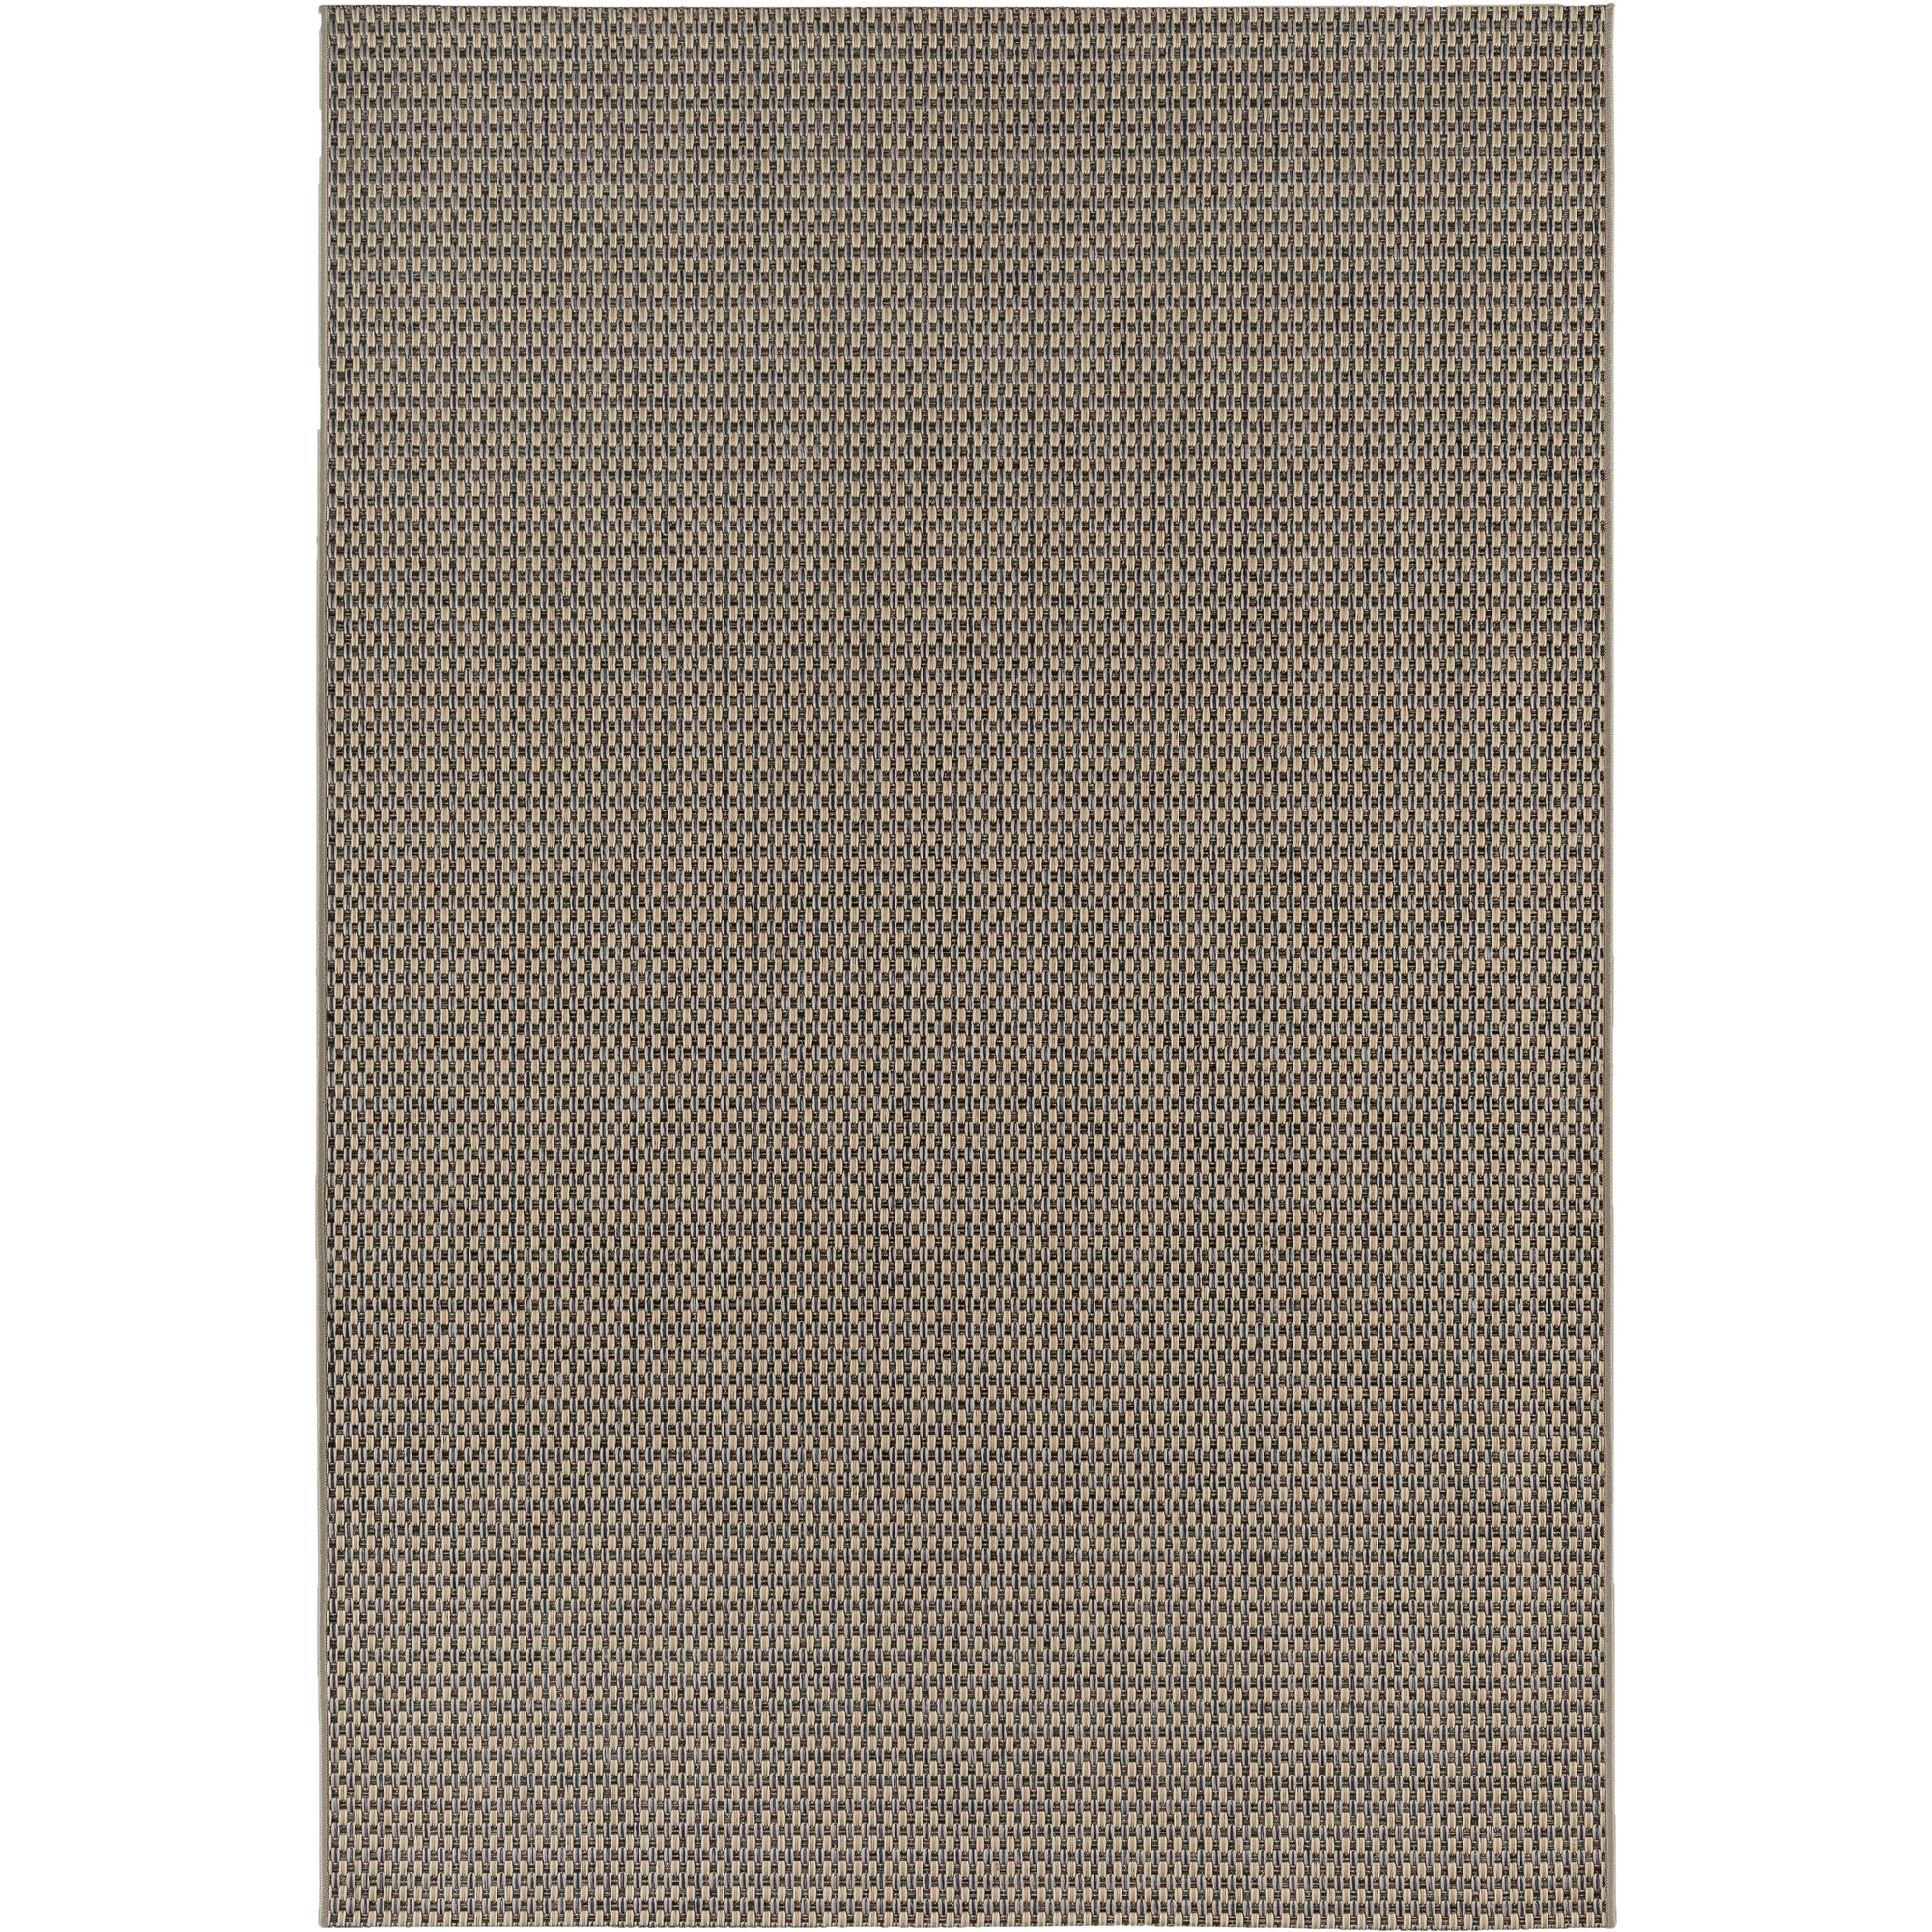 Teppich 'Claudio' beige/grau 67 x 120 cm + product picture